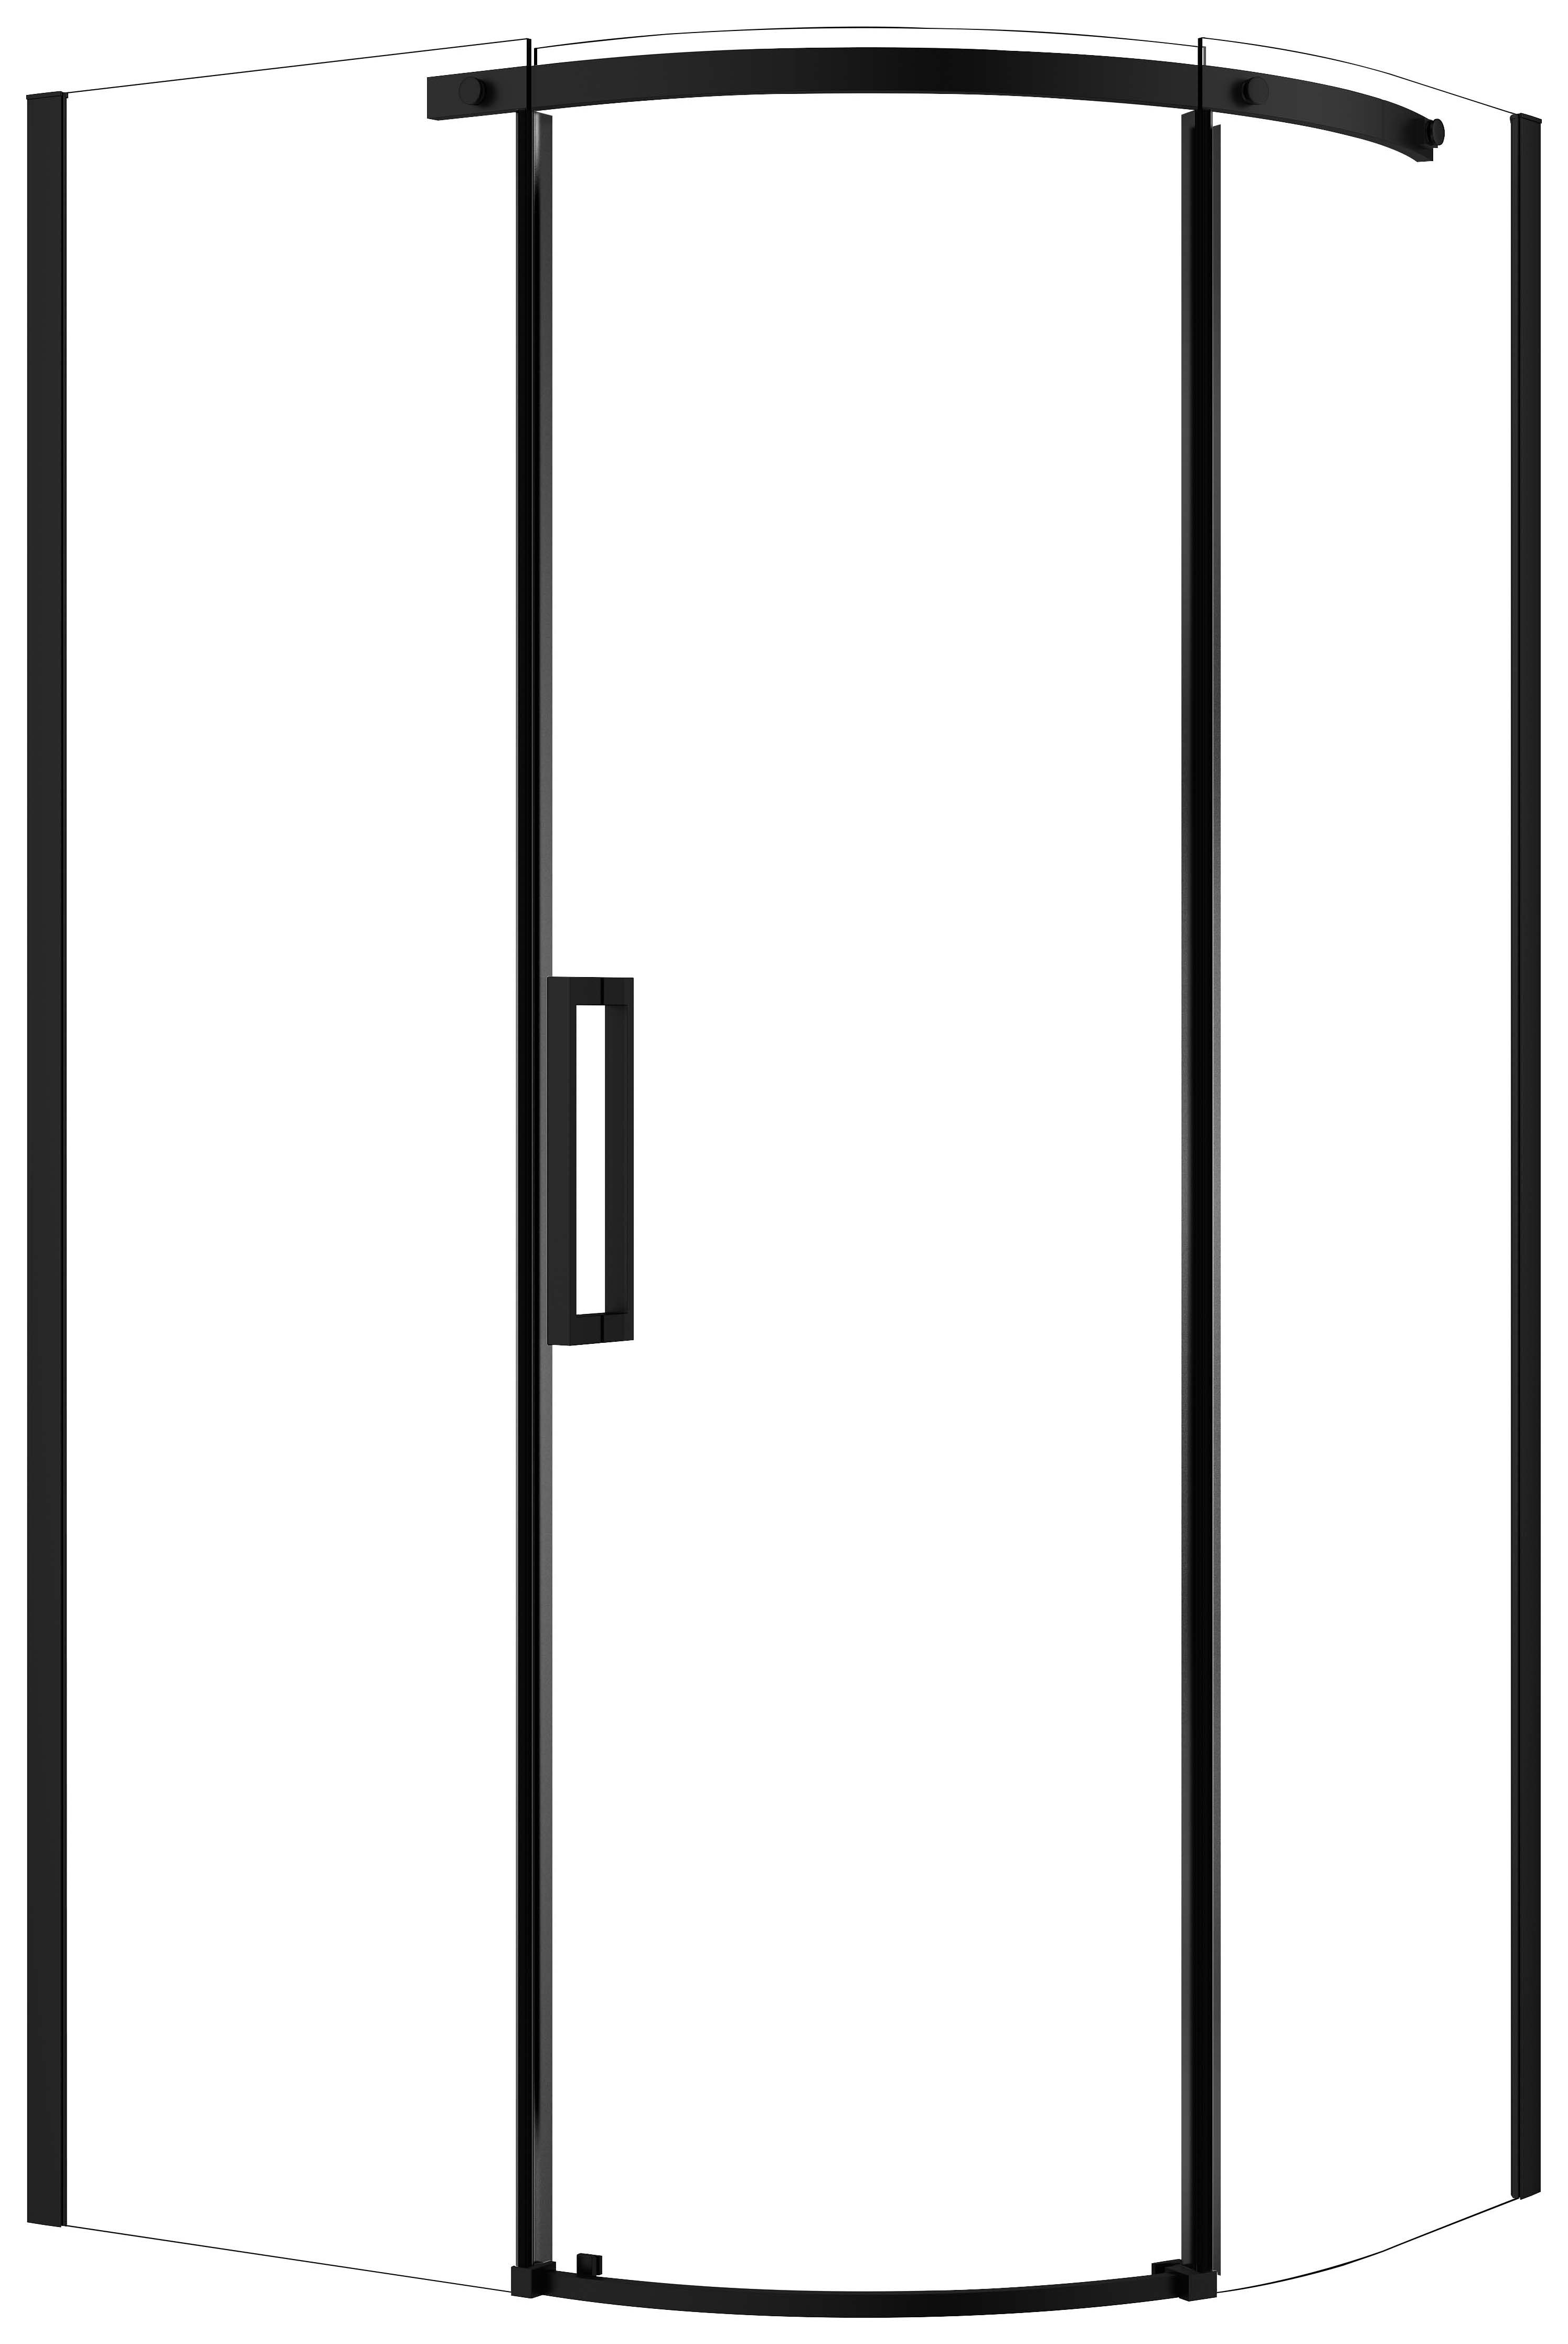 Nexa By Merlyn 8mm Black Frameless Offset Quadrant Single Sliding Door Left Opening Shower Enclosure - 1200 x 900mm